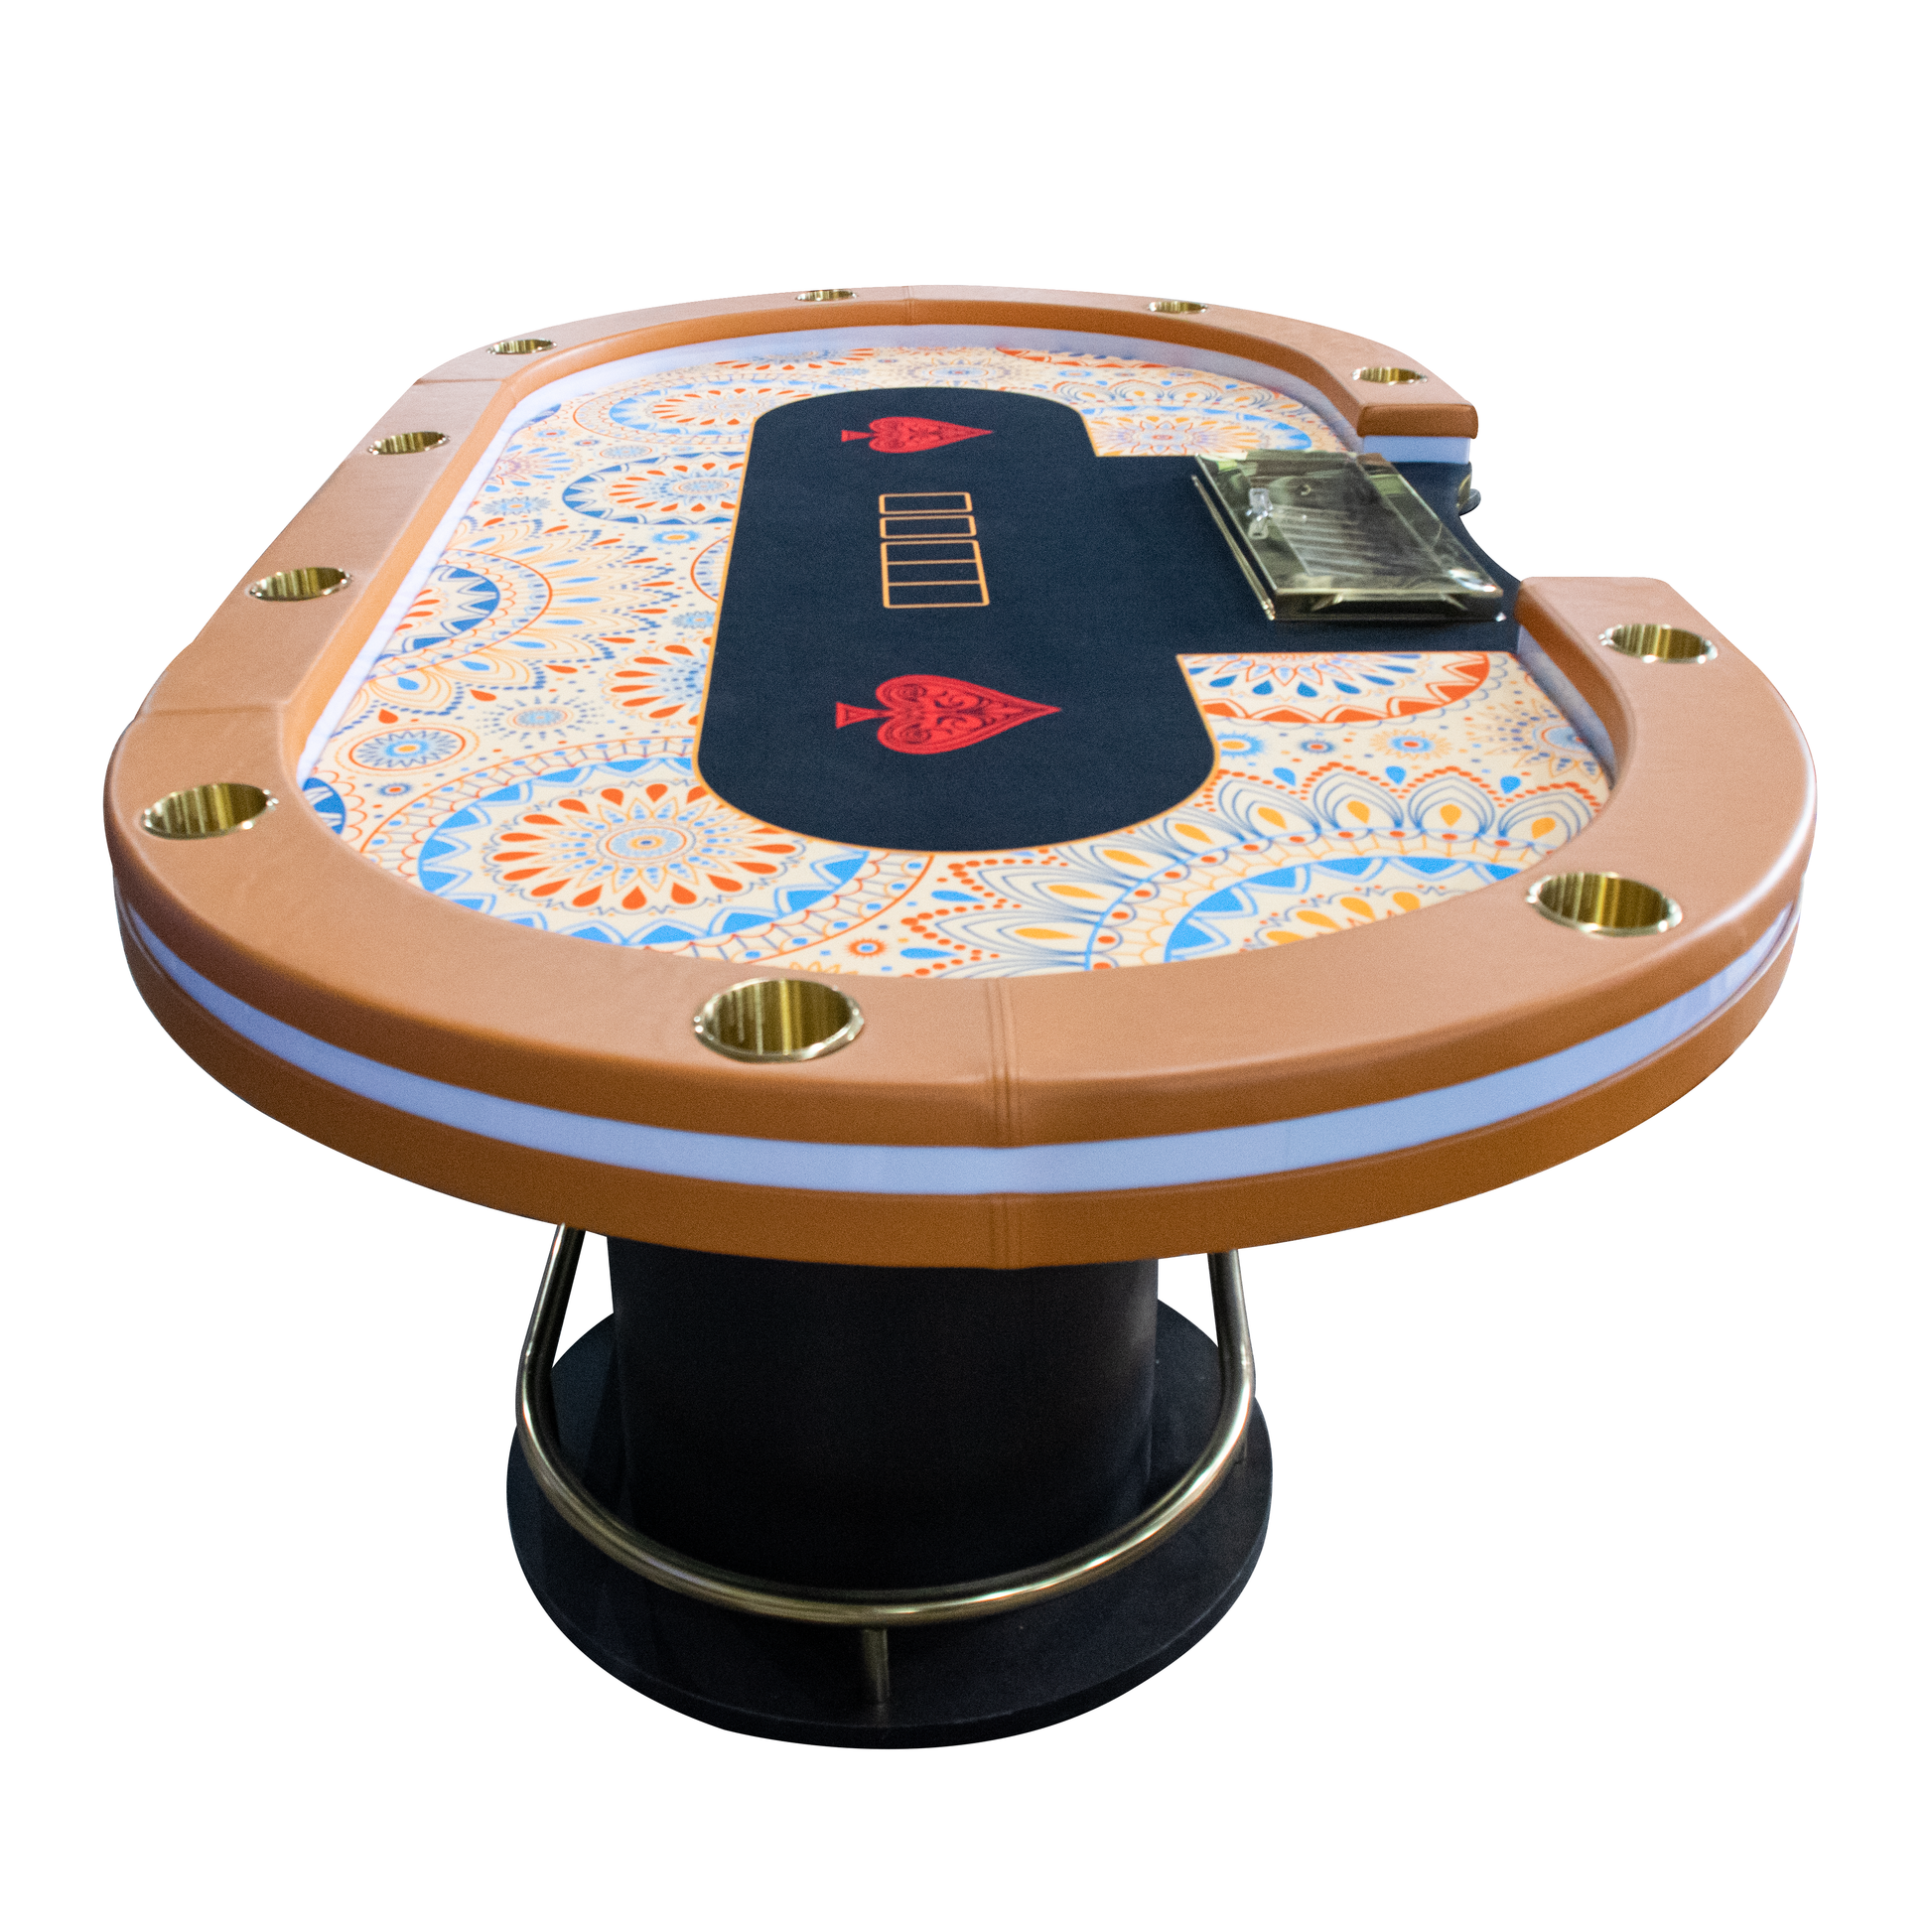 LEDテキサスポーカーテーブル [デラックスモデル] – pokergoods